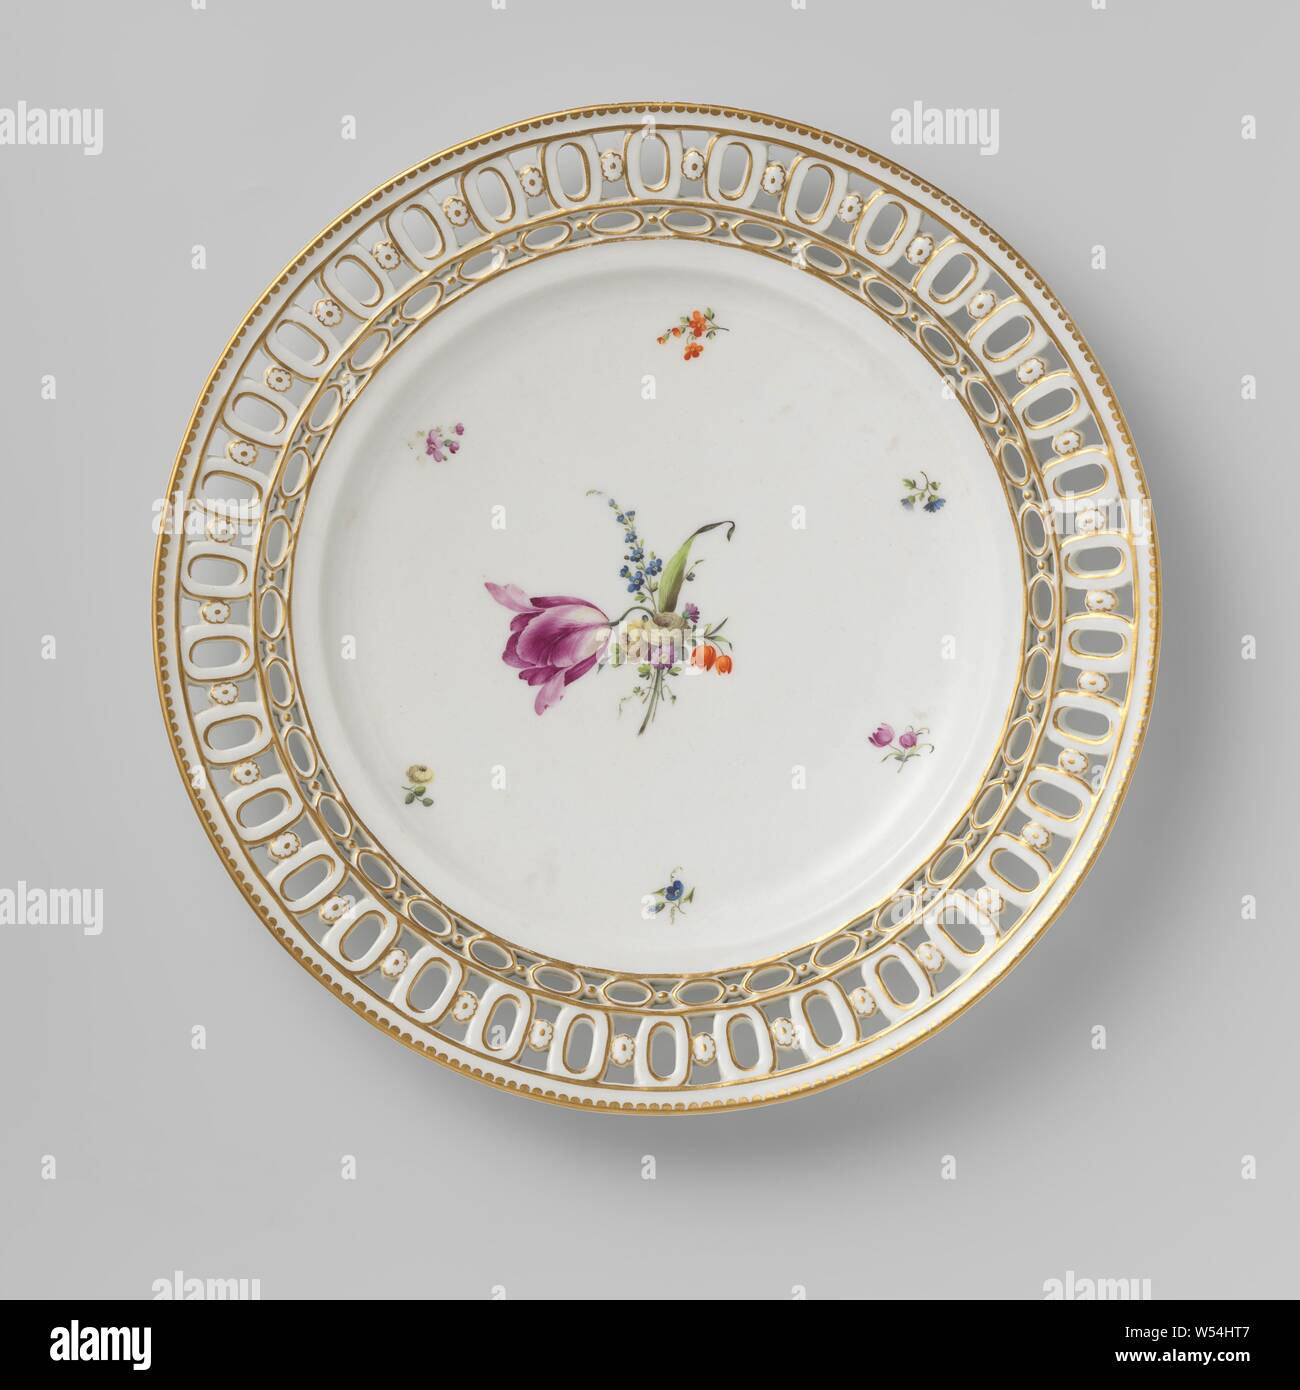 Plato de una canasta de nogal, pintado con flores esparcidas y golden juncos,  plato de porcelana. El borde del plato es cortada. Multicolores flores de  dispersión en la placa del plato. En